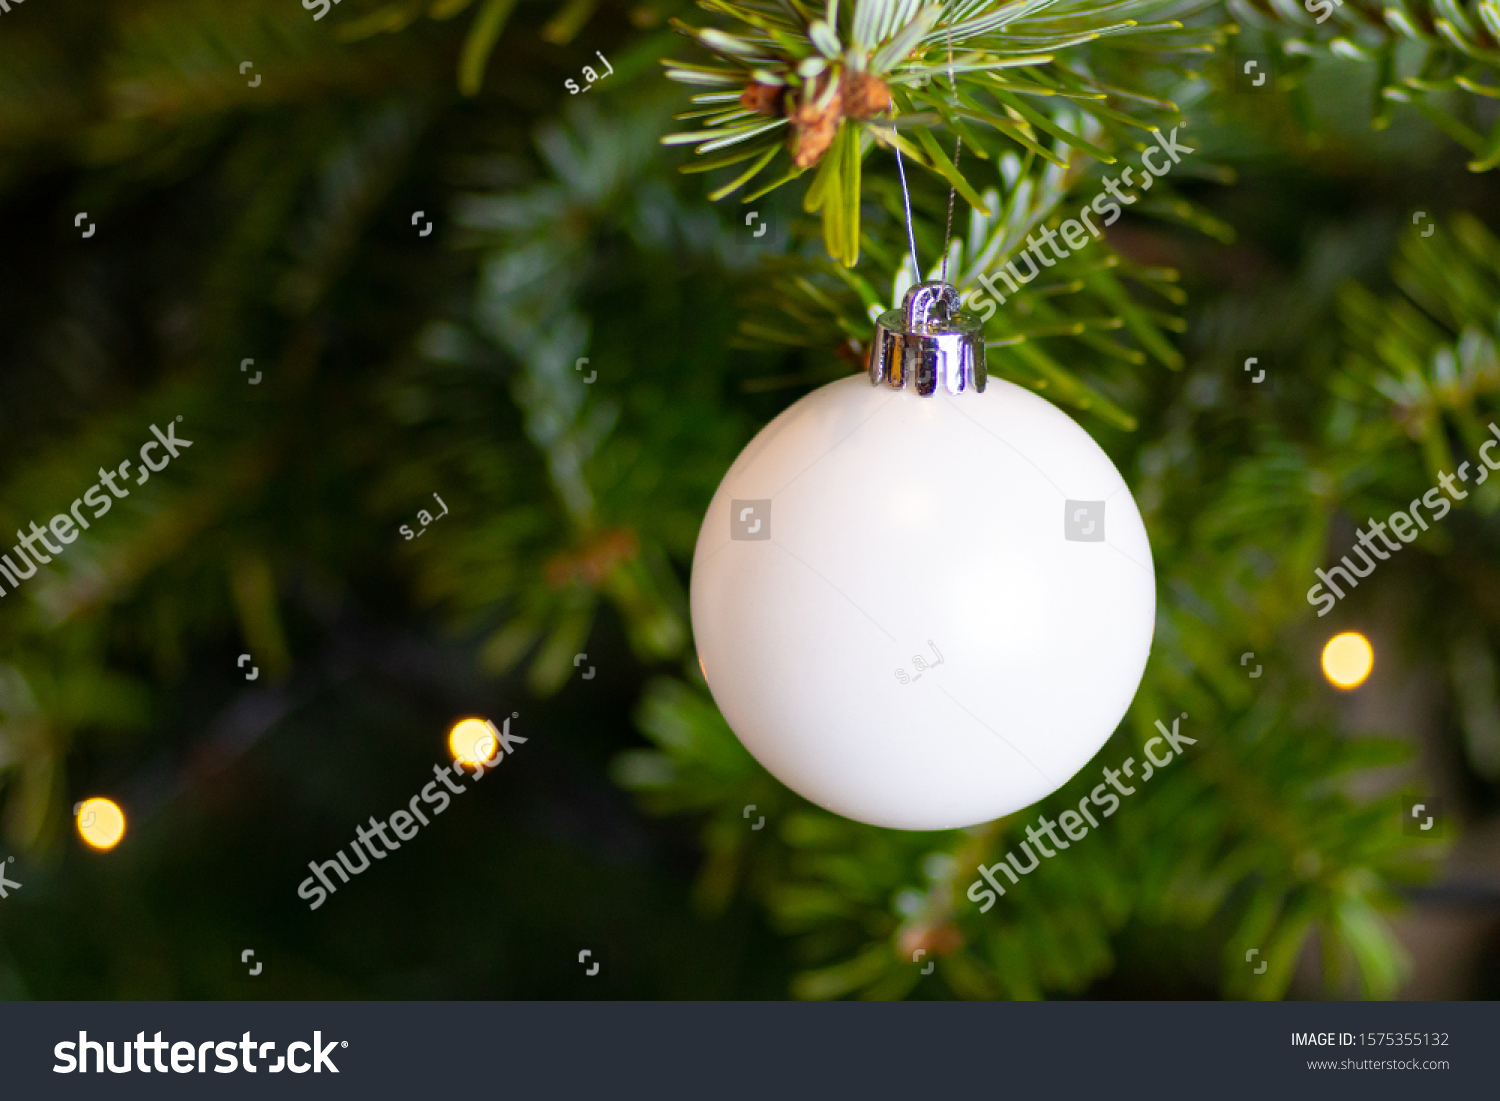 plain white christmas ornaments